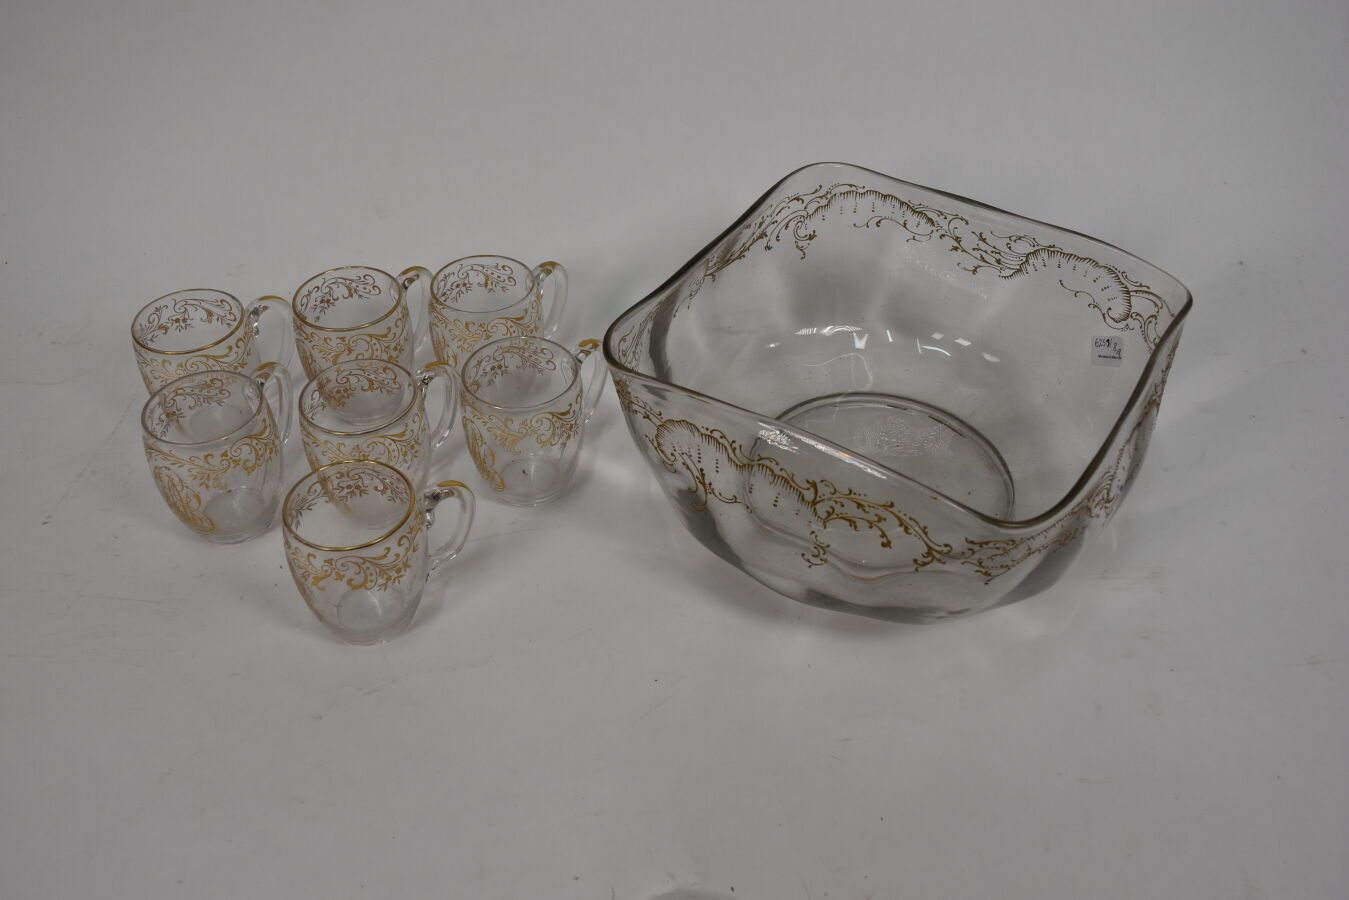 Null 金色卷轴和字母图案装饰的玻璃桑格利亚套装

包括七个杯子和一个碗

(事故)